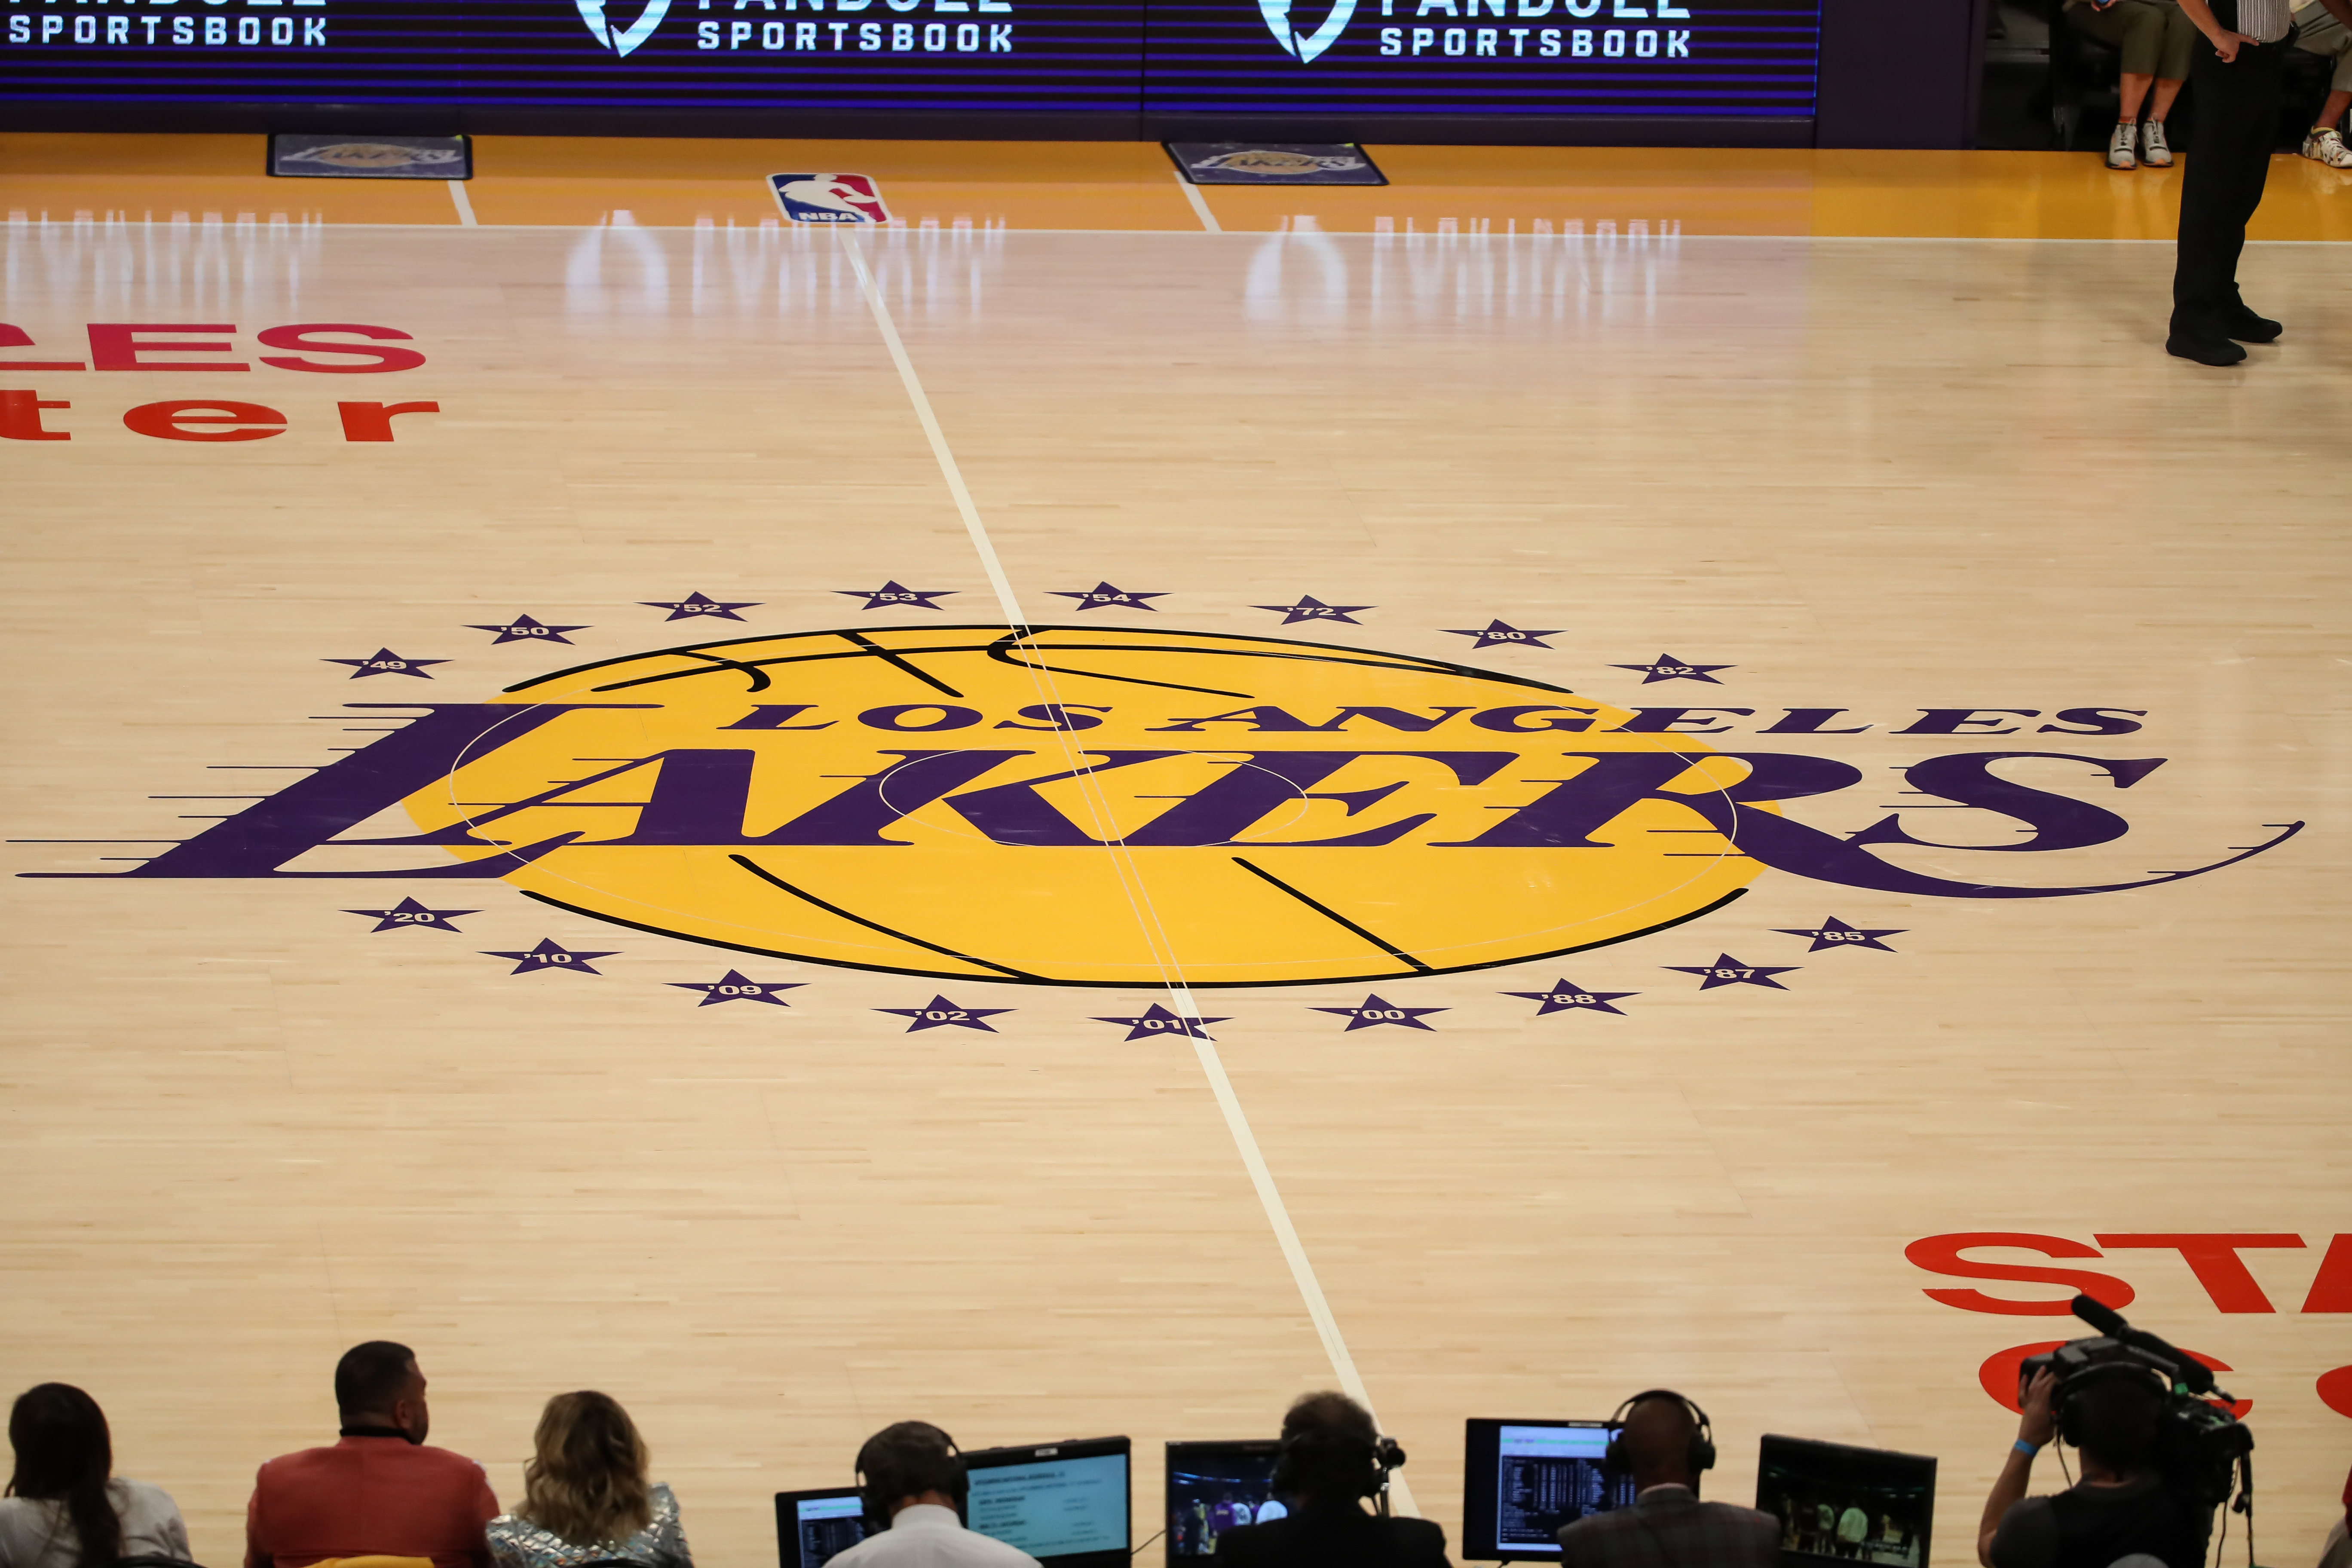 NBA: OCT 19 Warriors at Lakers